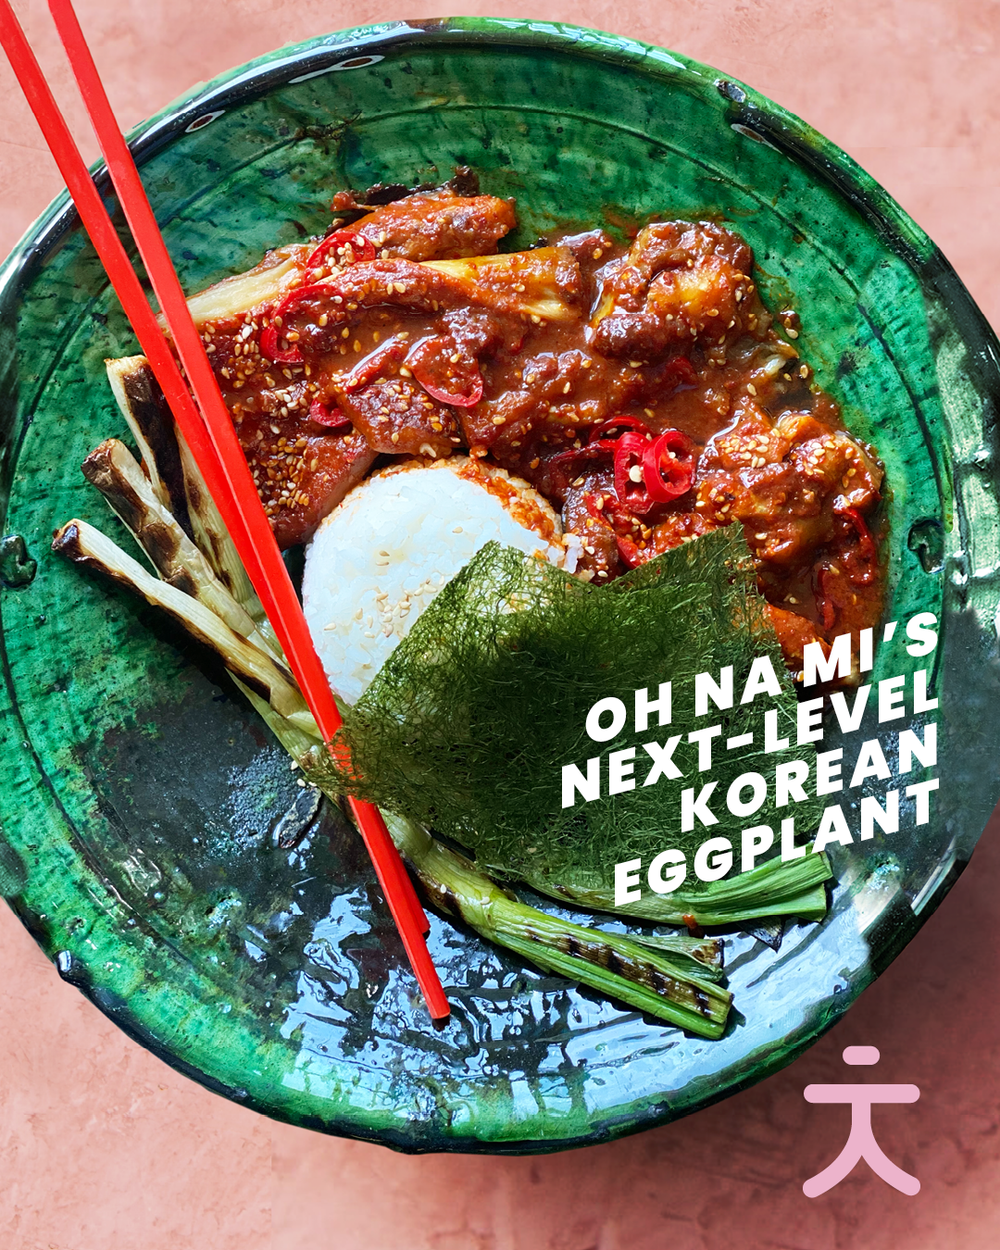 Oh Na Mi's Next Level Korean Eggplant 🍆